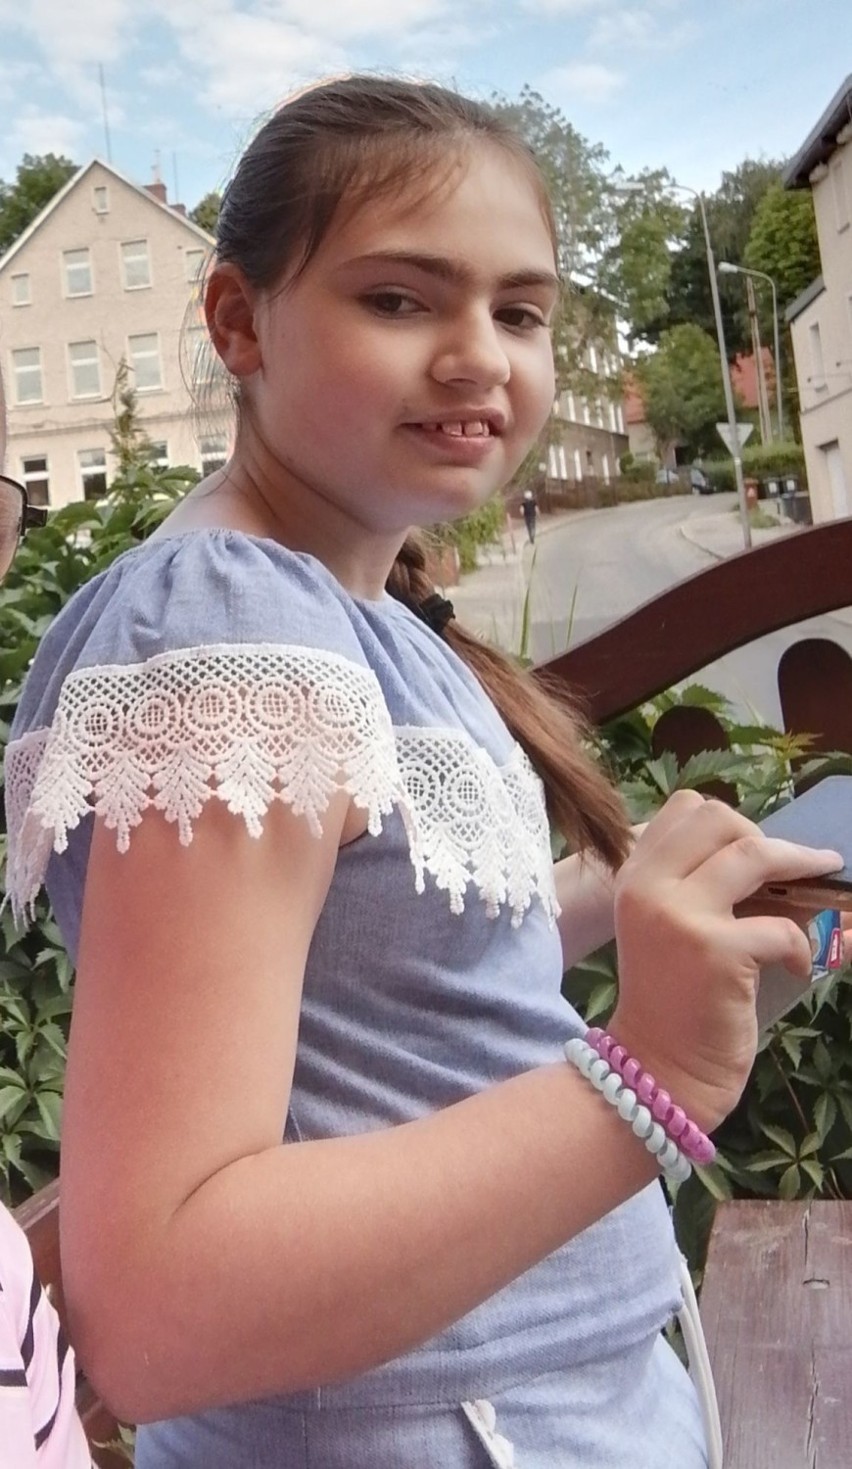 Nastolatka ze Szczecinka walczy z straszną chorobą. Możemy pomóc [zdjęcia]